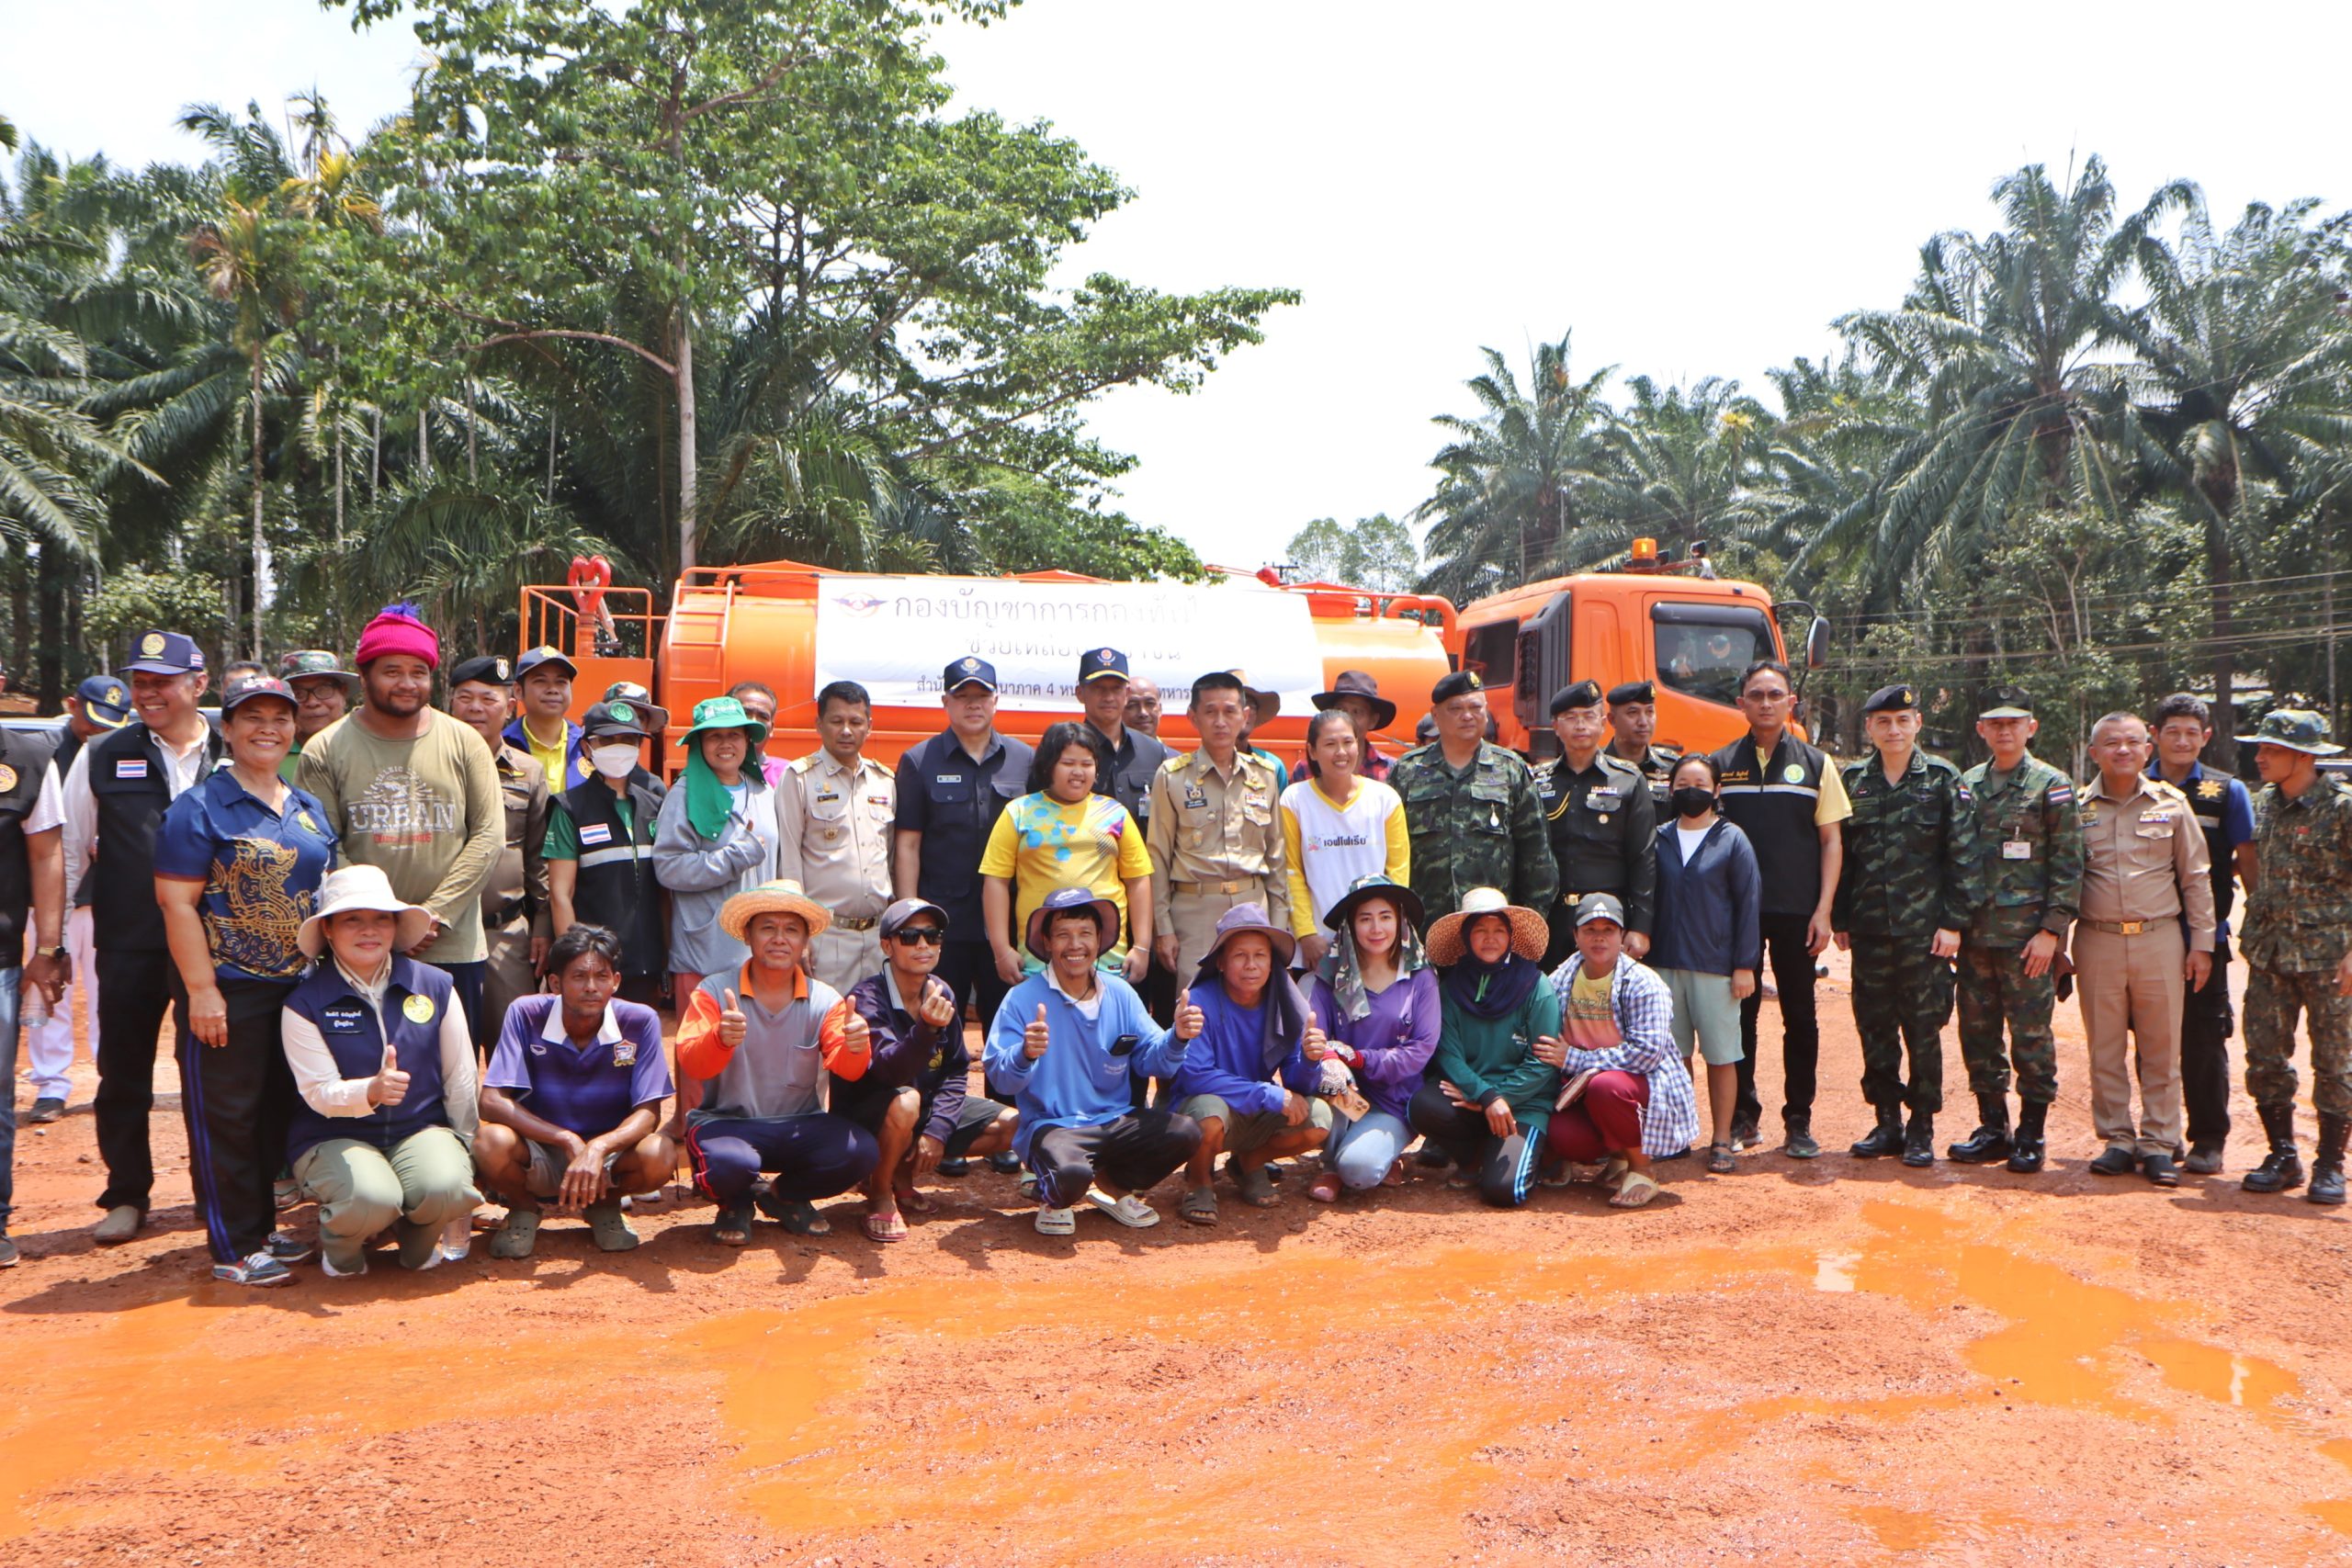 ชุมพร-Kick-off รถบรรทุกน้ำเติมน้ำในสระ เริ่มปฏิบัติการให้ความช่วยเหลือเกษตรกรชาวสวนทุเรียนที่ประสบปัญหาภัยแล้ง